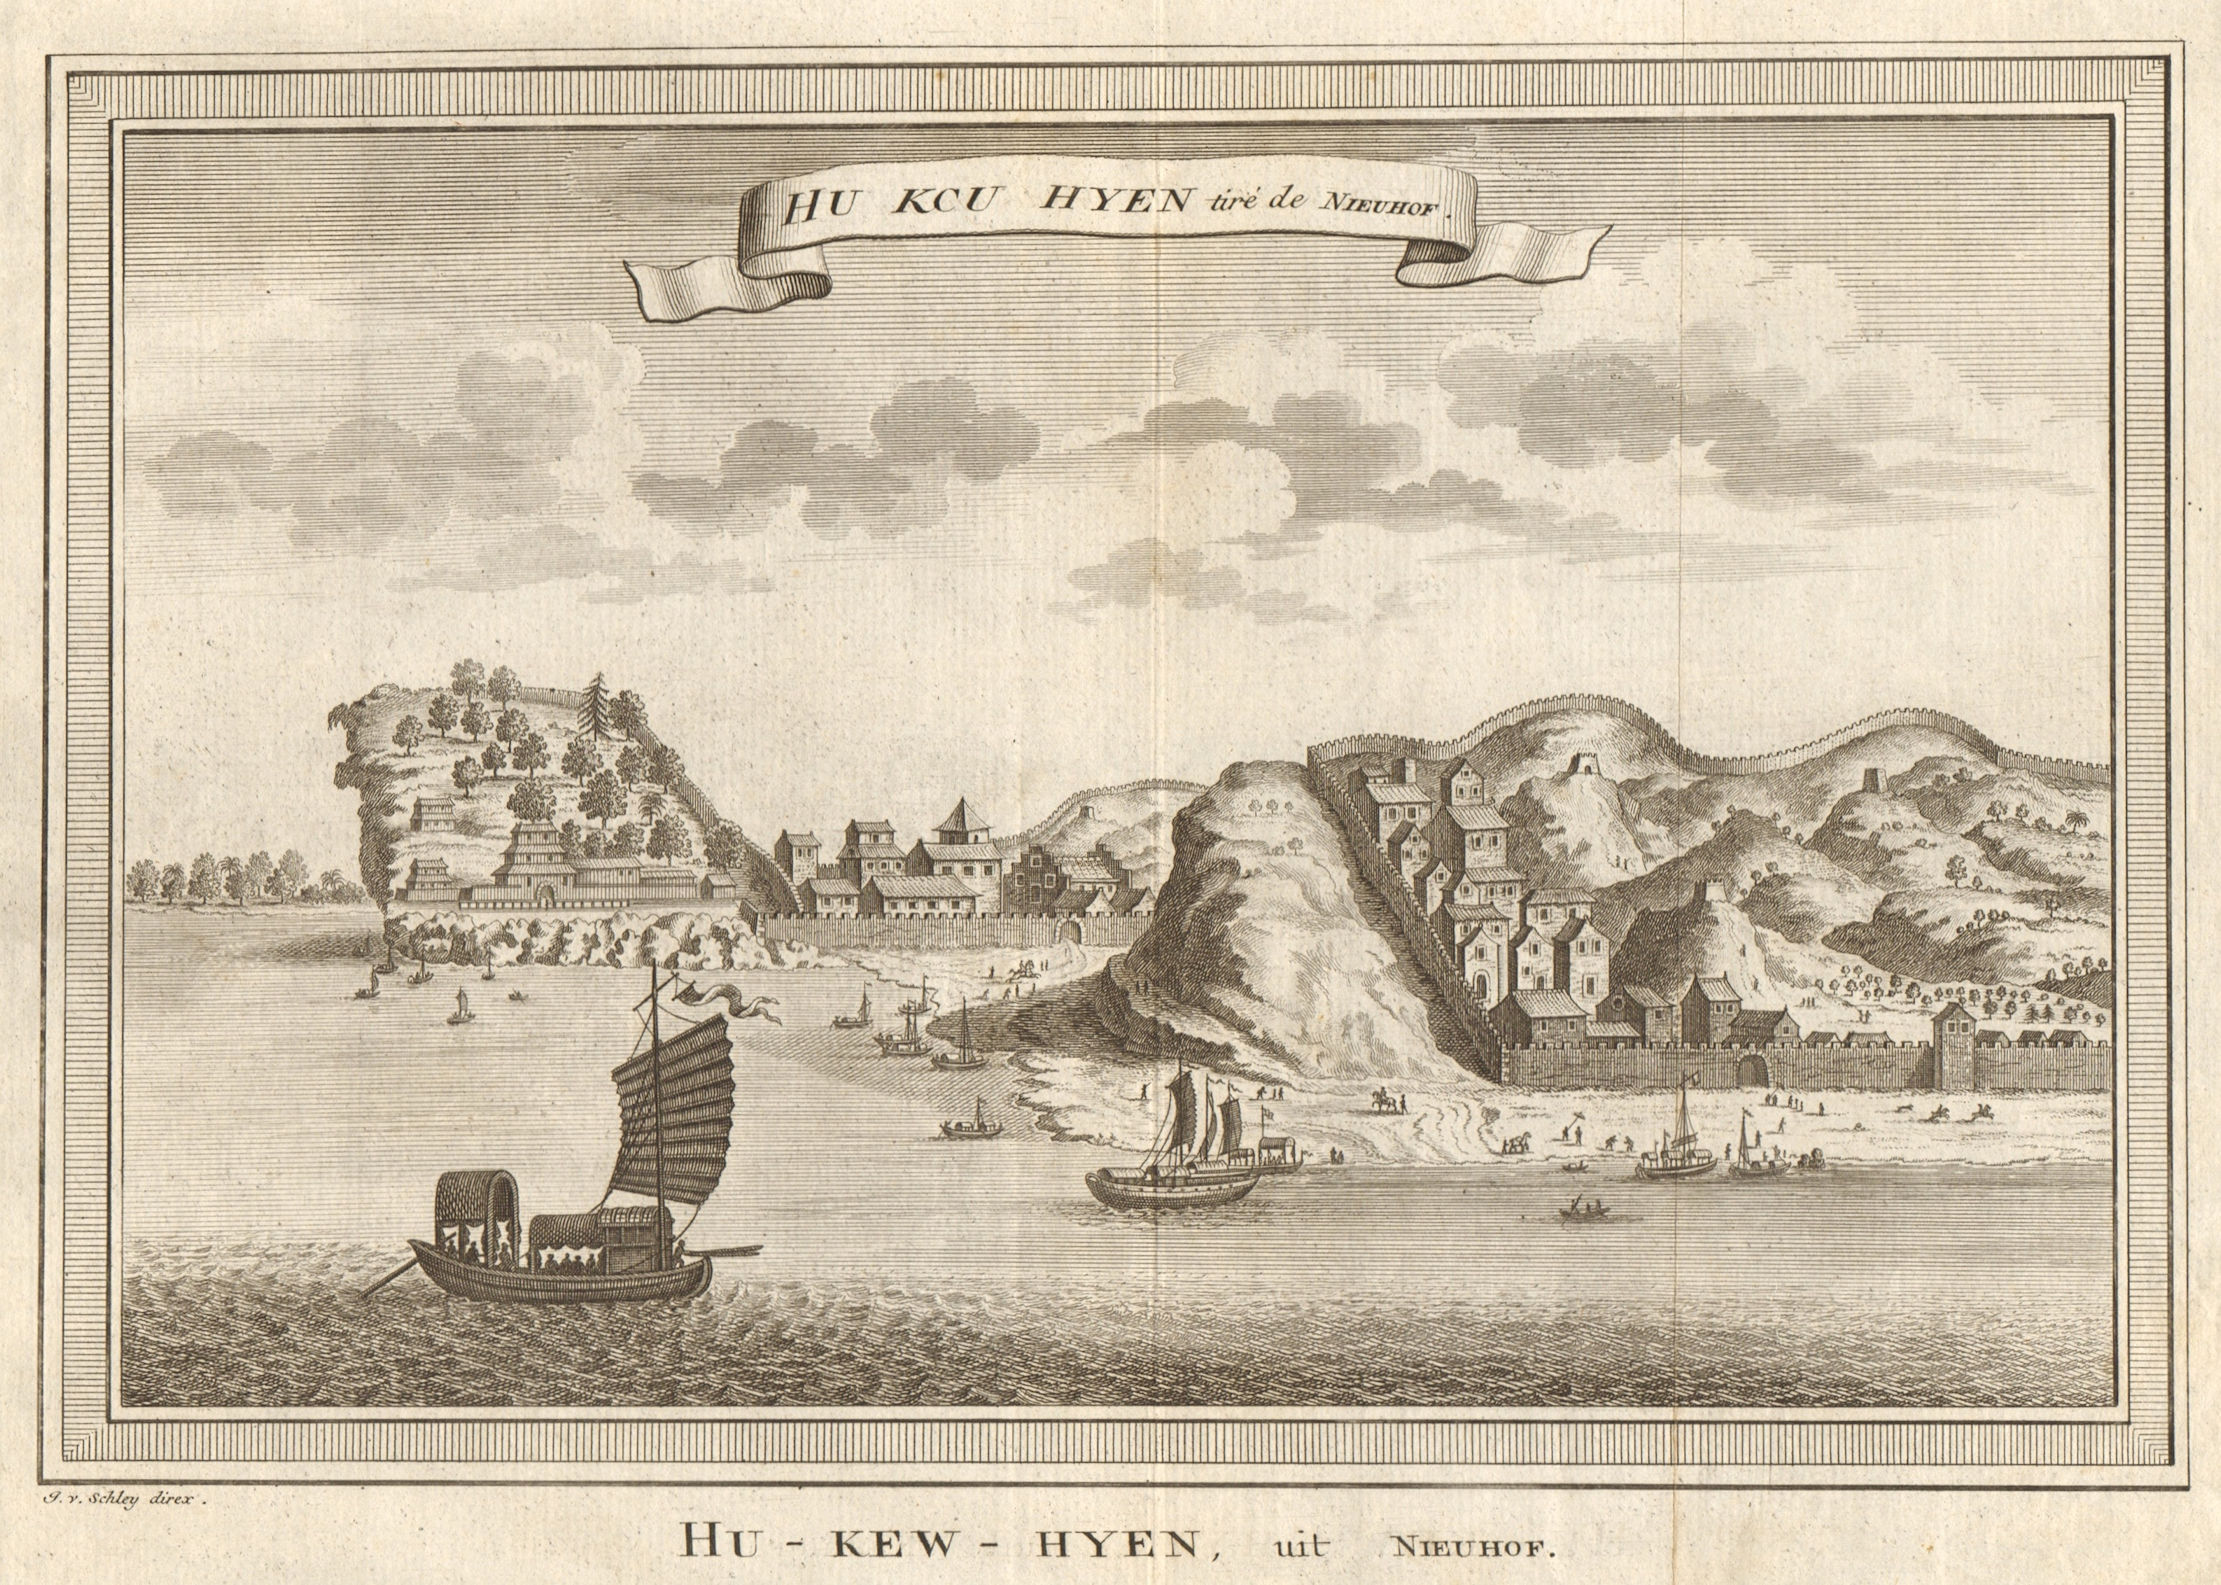 Associate Product 'Hu keu hyen'. View of Hukou, Jiangxi, China. Junks. SCHLEY 1749 old print